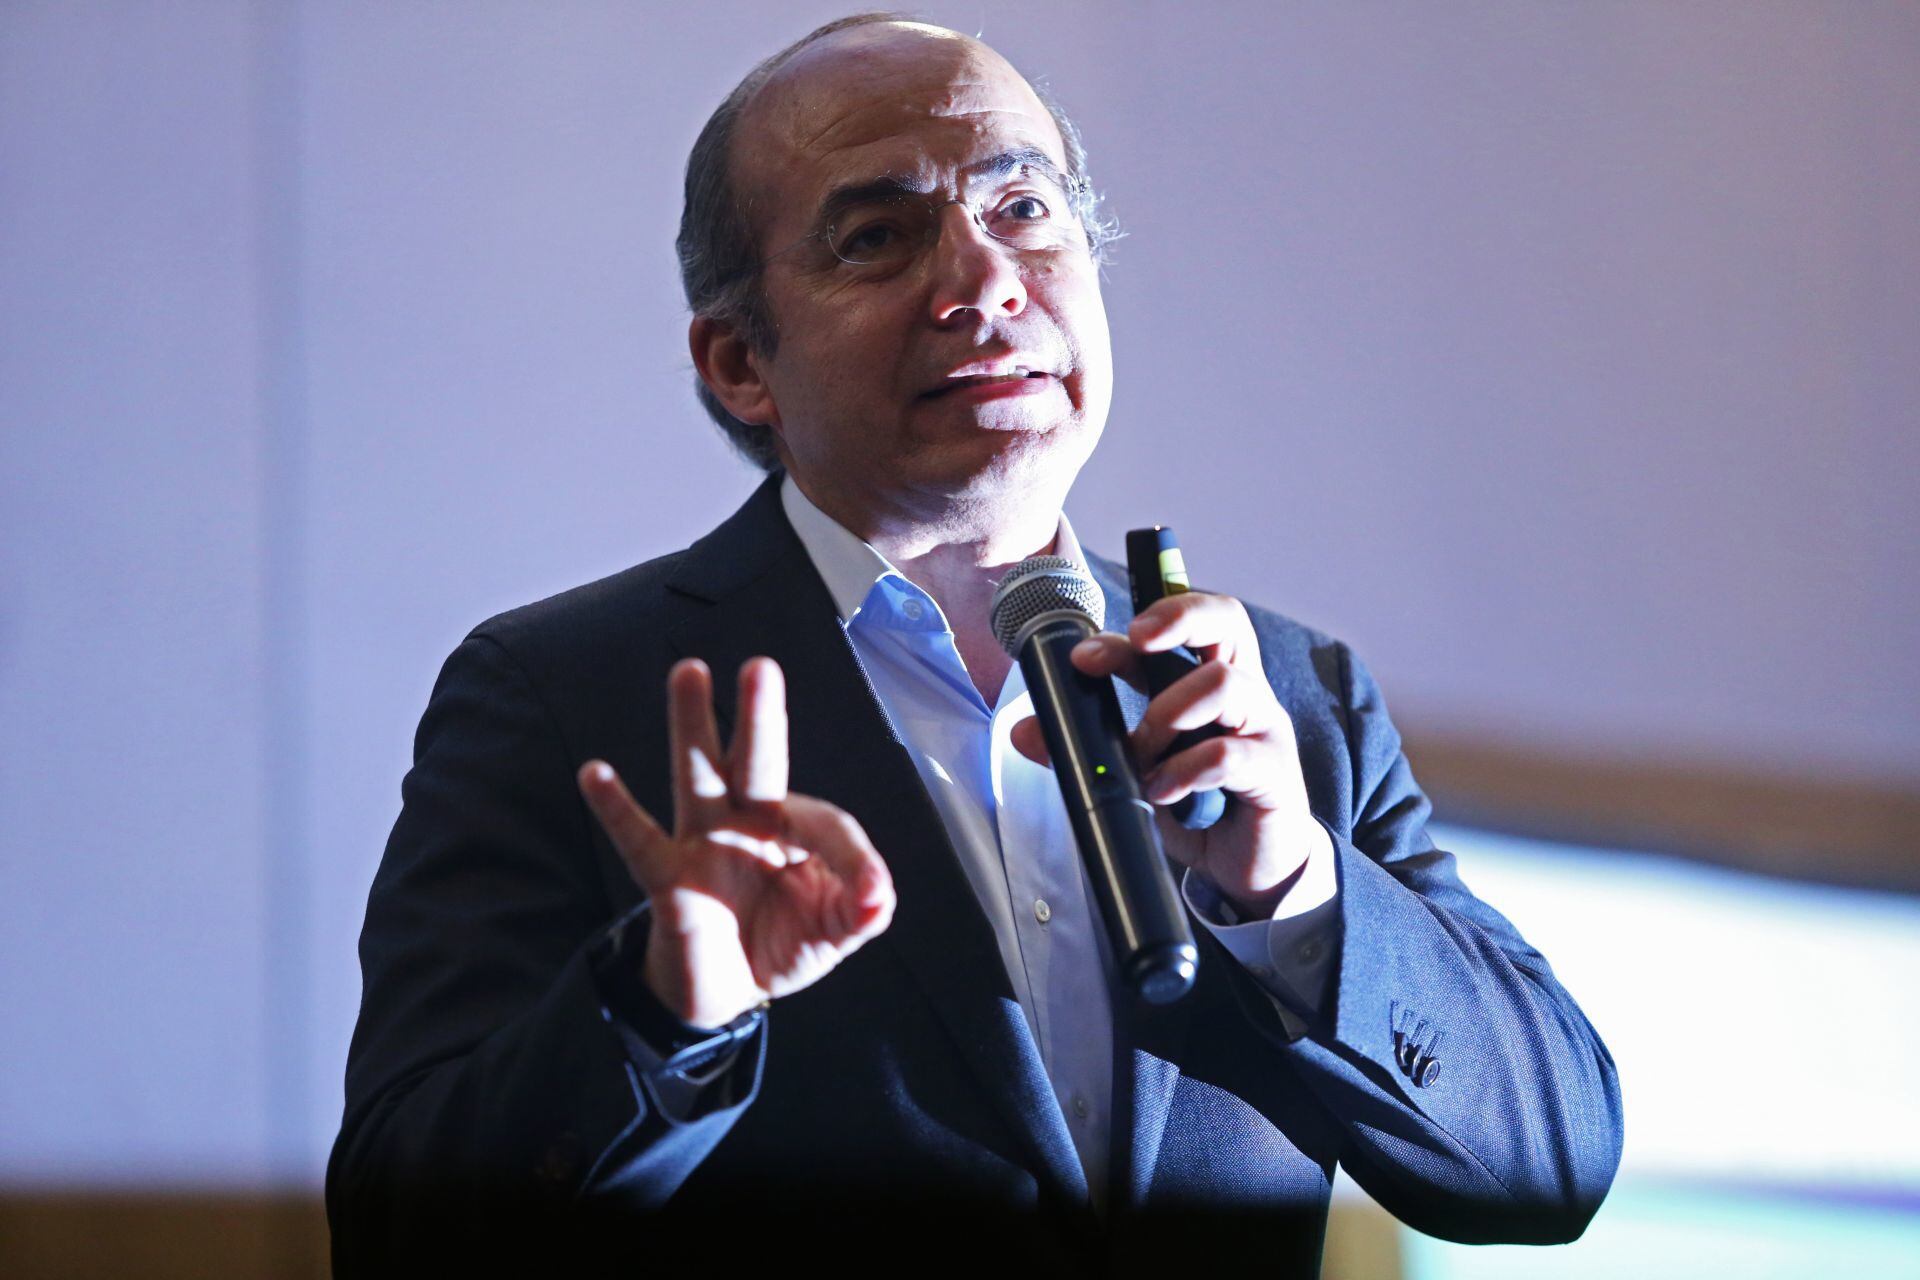 ‘Dirigencia del PAN está extraviada’, Felipe Calderón critica reunión entre PAN y ultraderechista Vox